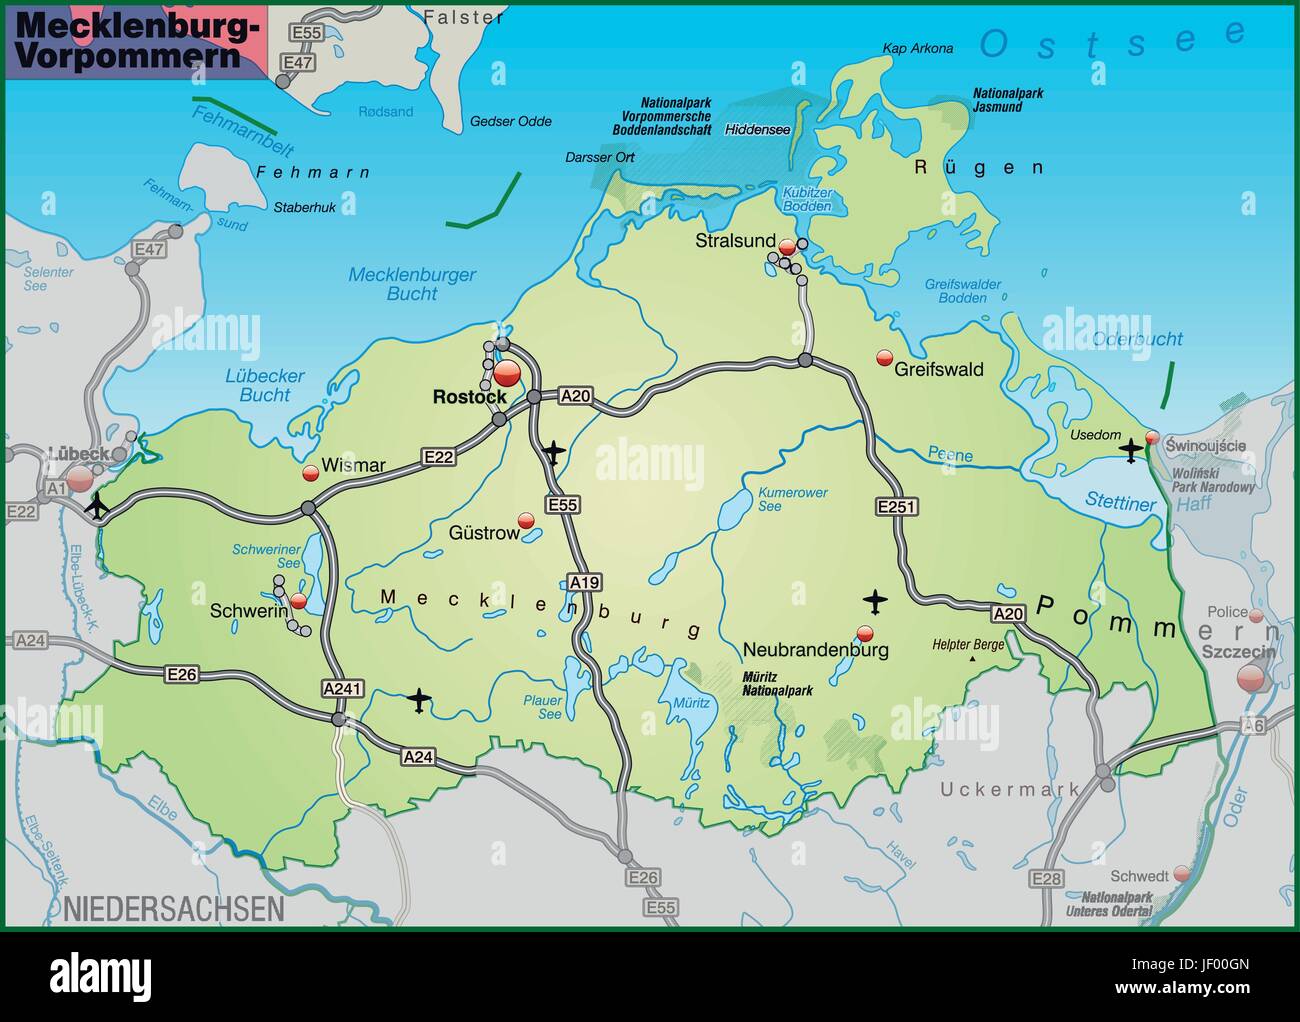 Karte von Mecklenburg-Vorpommern mit Verkehrsnetz in Pastellgrün Stock Vektor